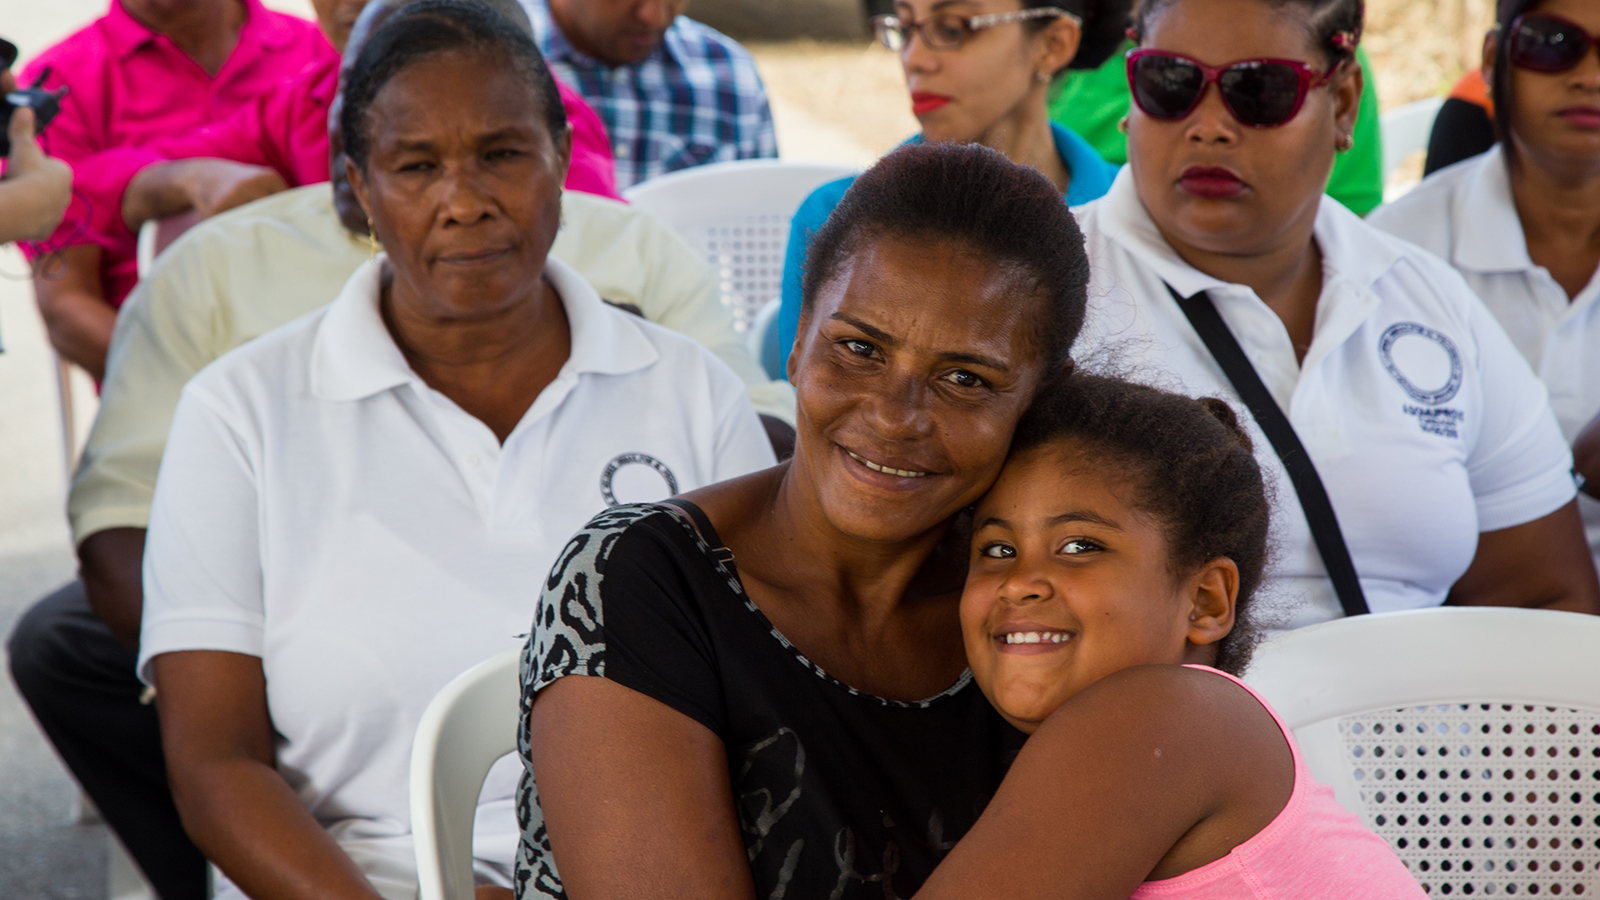 REPÚBLICA DOMINICANA: Una Farmacia del Pueblo que beneficia a los pobres. En Veragua, Espaillat